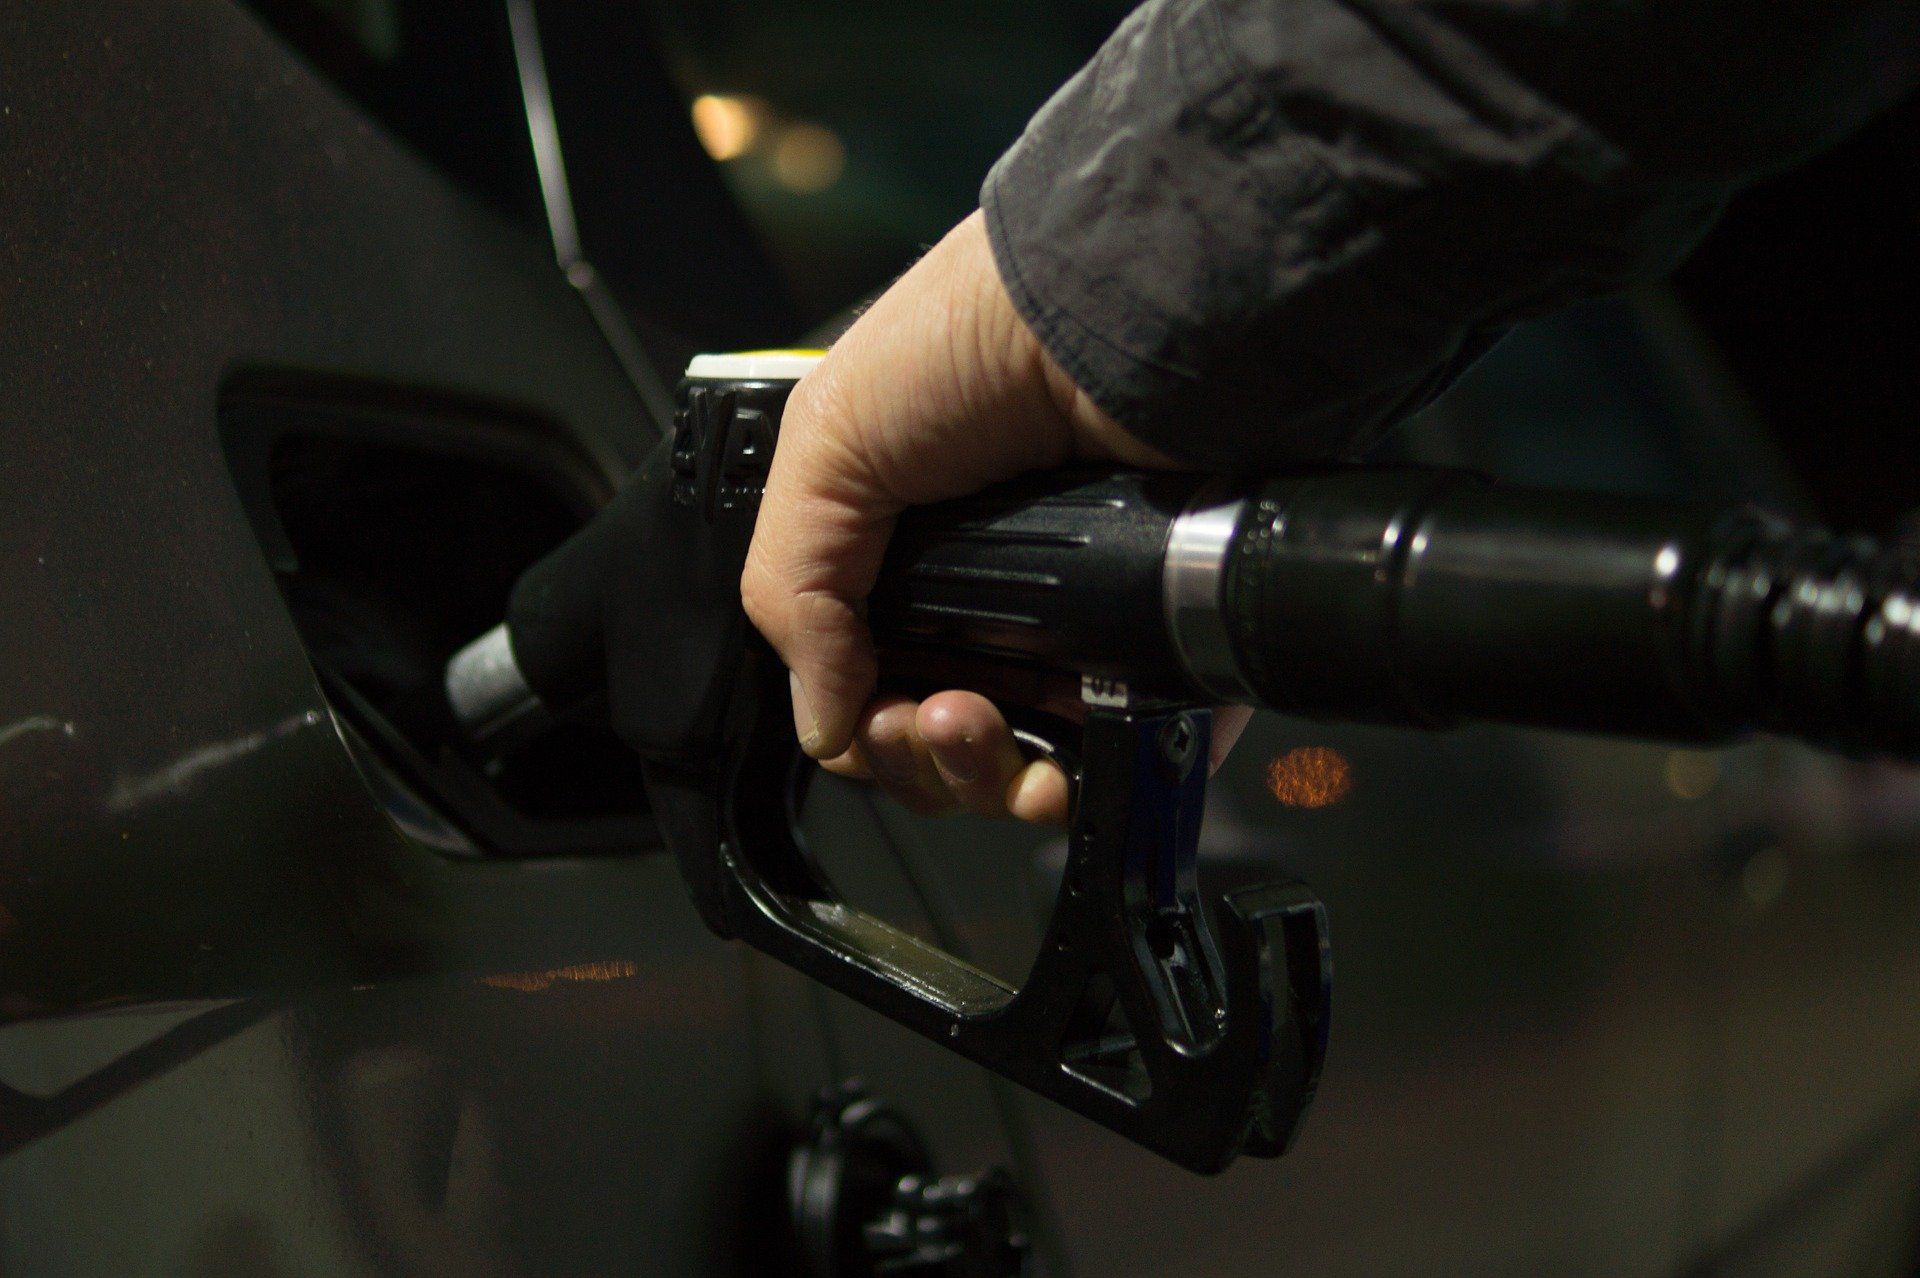 Fuel price May 26, 2022: Petrol Rs 96.72, diesel Rs 89.62 in Delhi